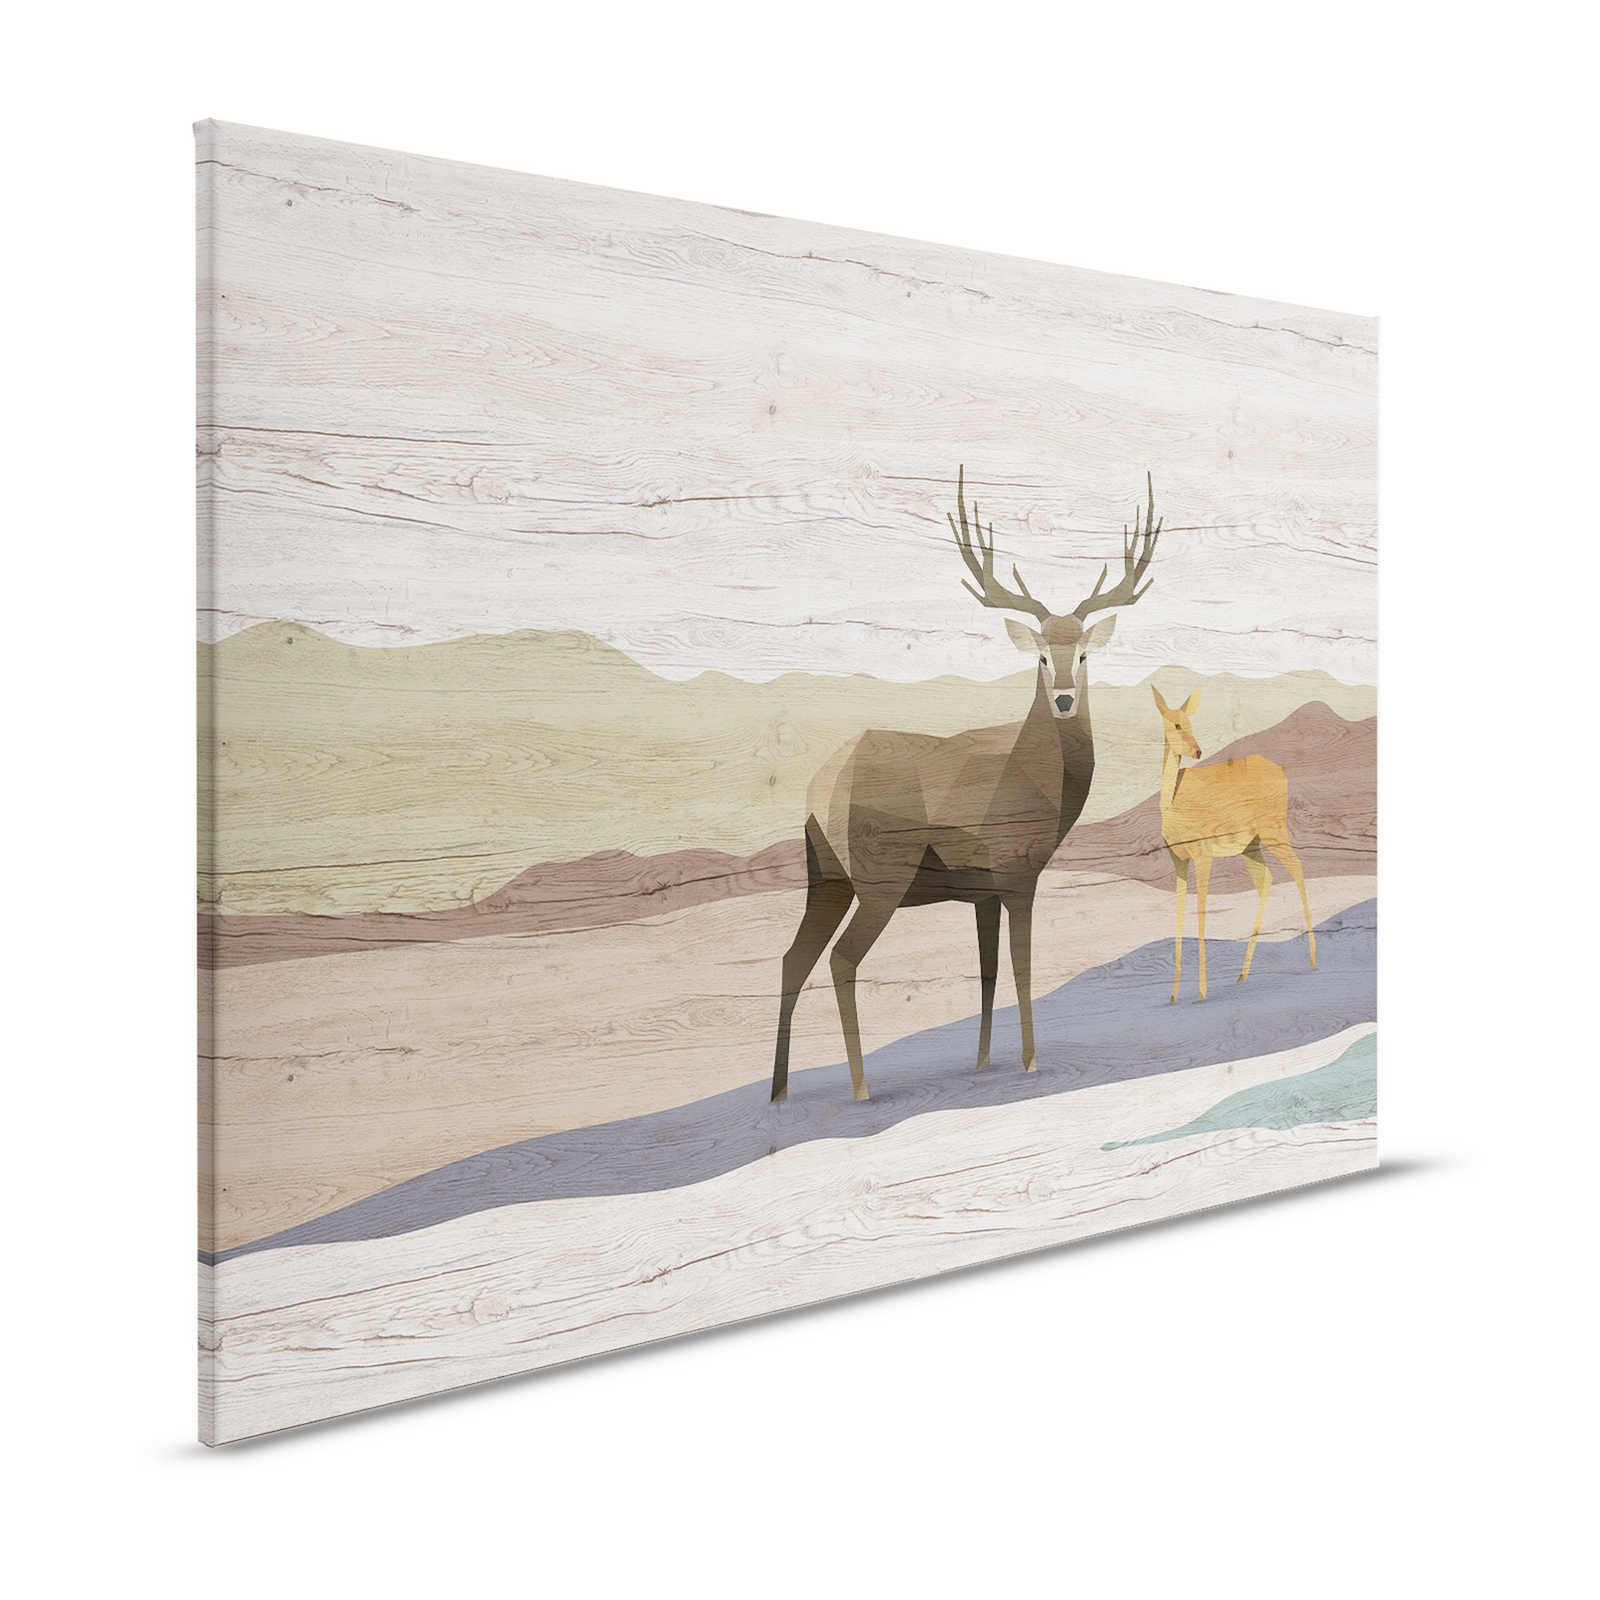 Yukon 2 - Pintura sobre lienzo grano de madera, diseño de ciervo y corzo - 1,20 m x 0,80 m
